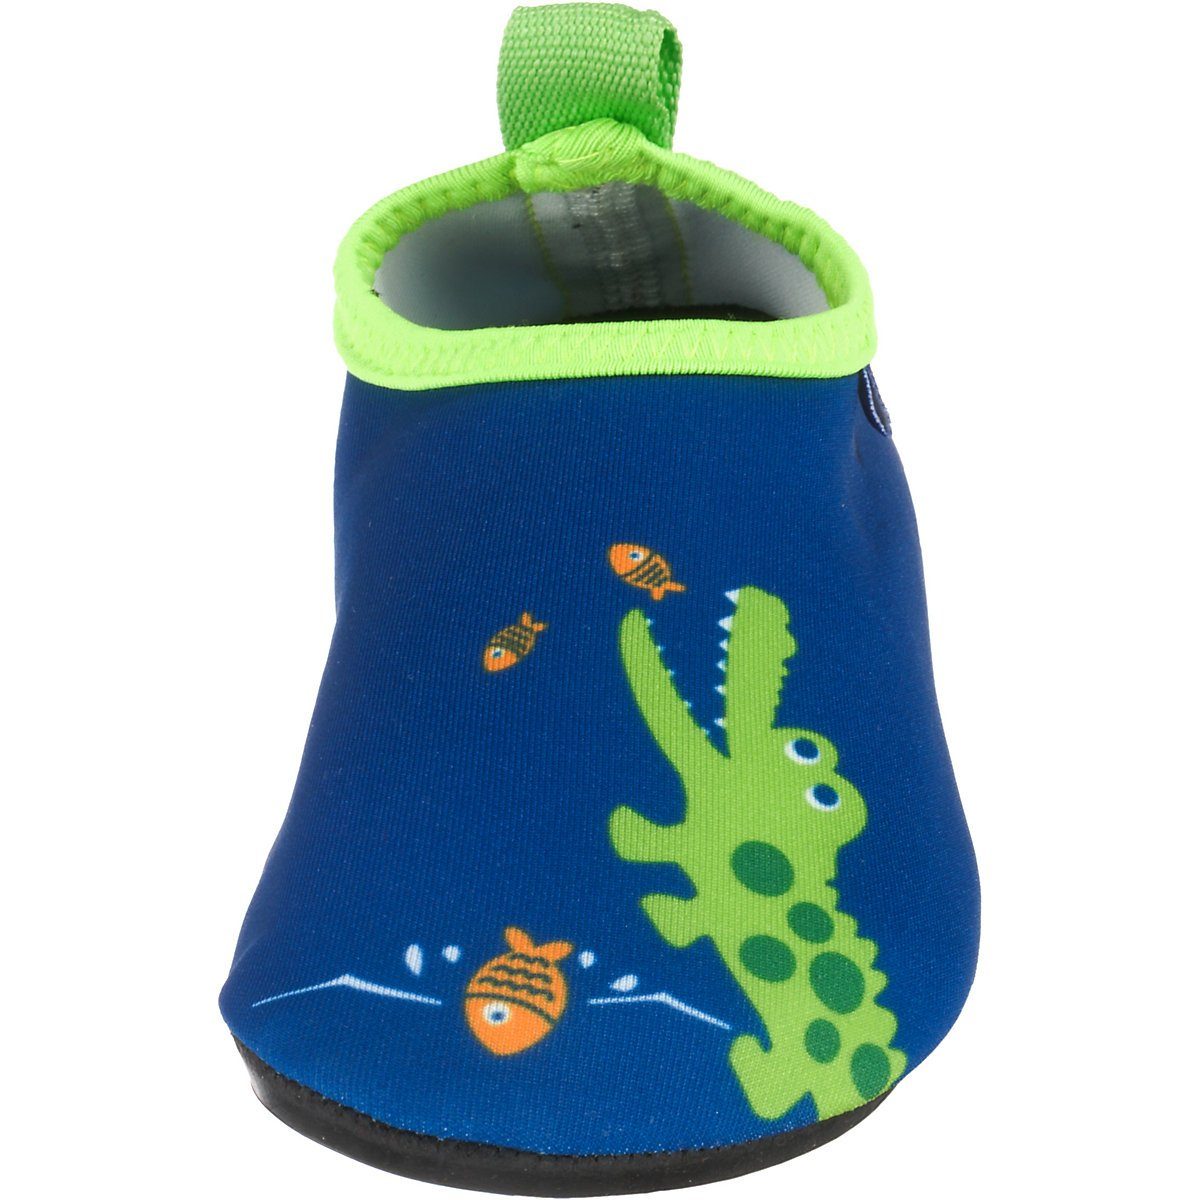 Wasserschuhe Badeschuh Passform, rutschhemmender Badeschuhe Sohle Playshoes Schwimmschuhe, flexible mit Barfuß-Schuh Motiv Krodkodil-blau